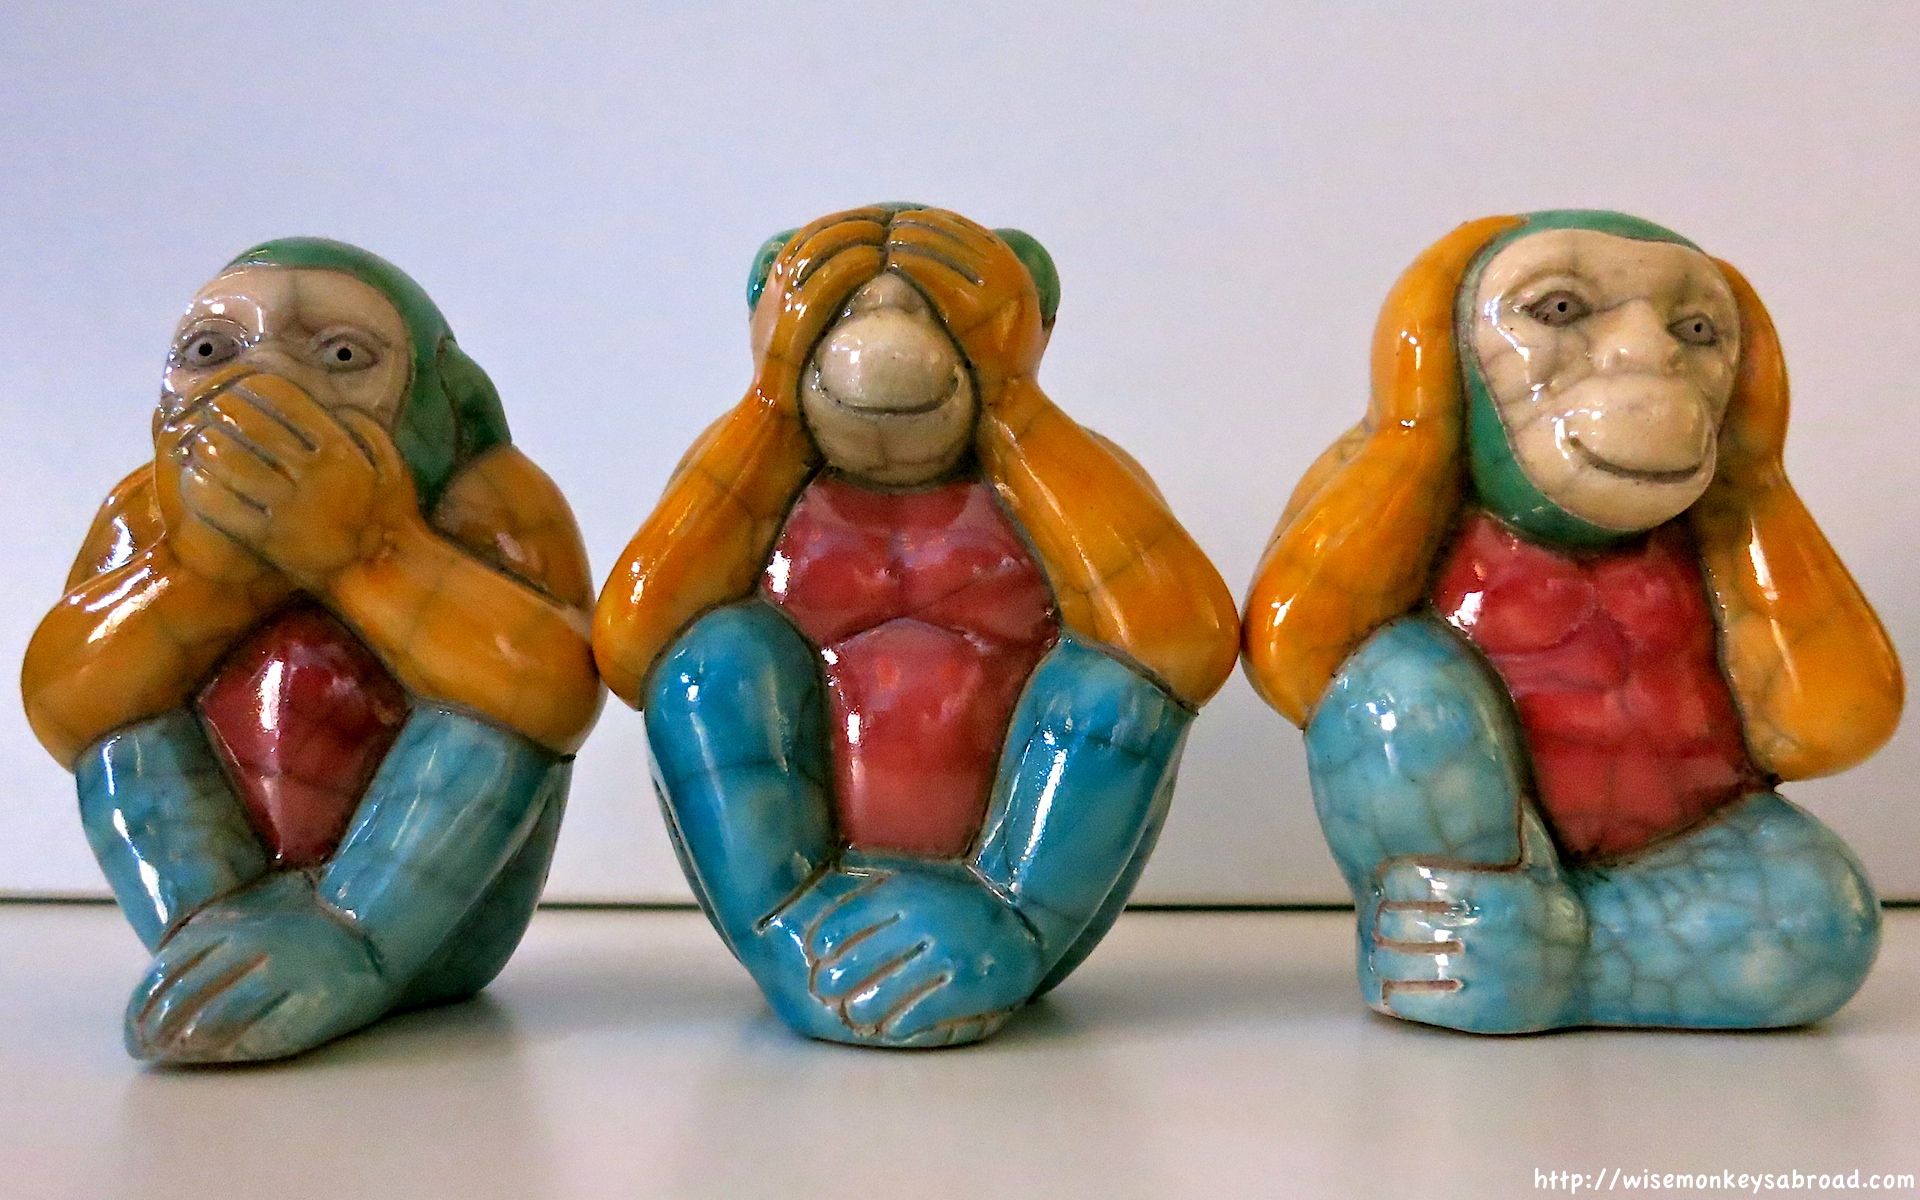 Three wise monkeys « wise monkeys abroad